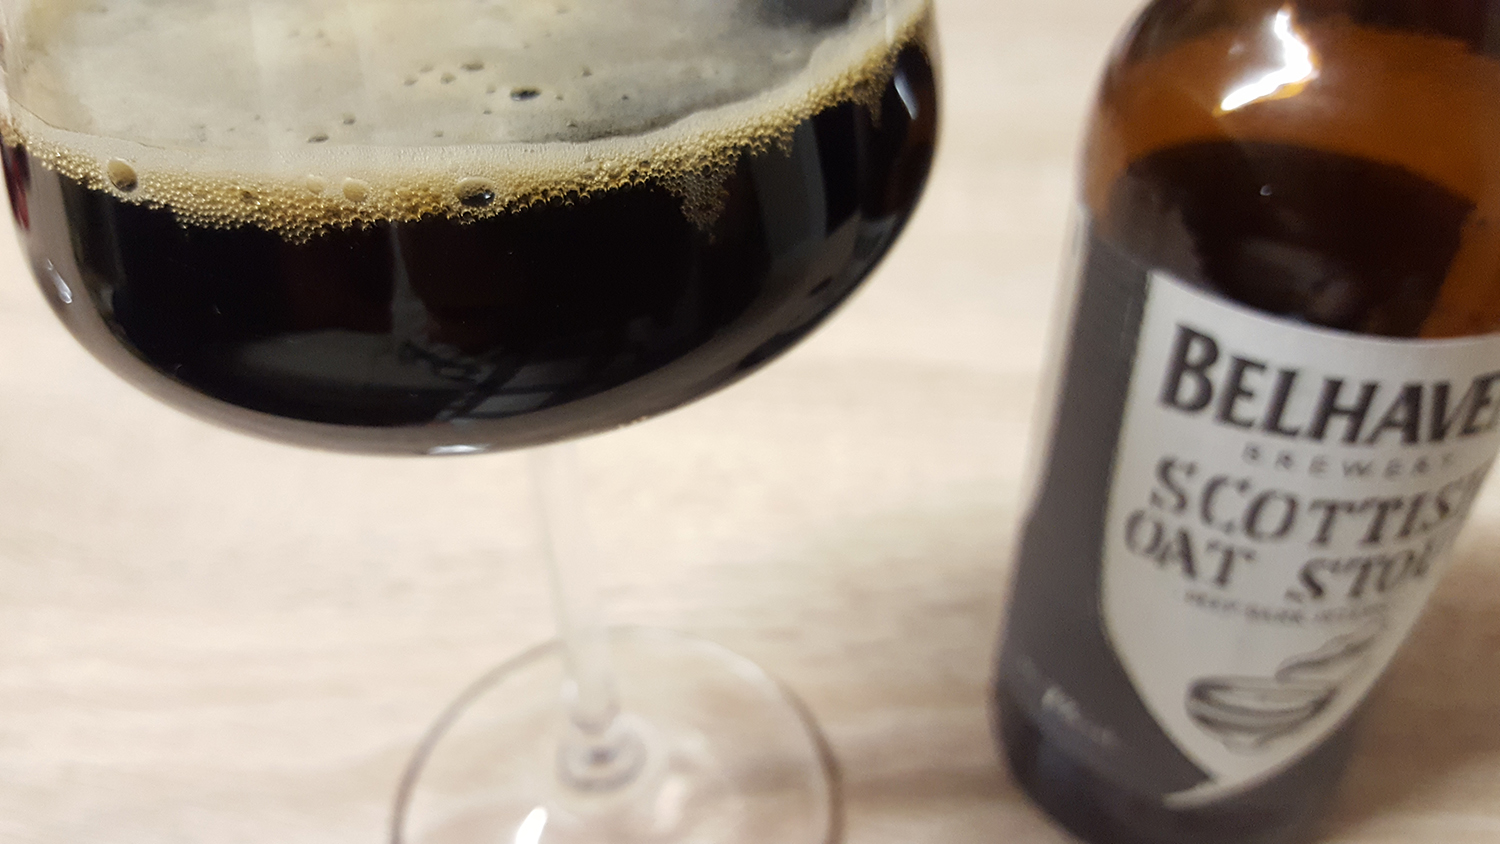 La bière brune Scottish Oat Stout de la brasserie Belhaven Brewery de Dunbar en Ecosse et sa bouteille.